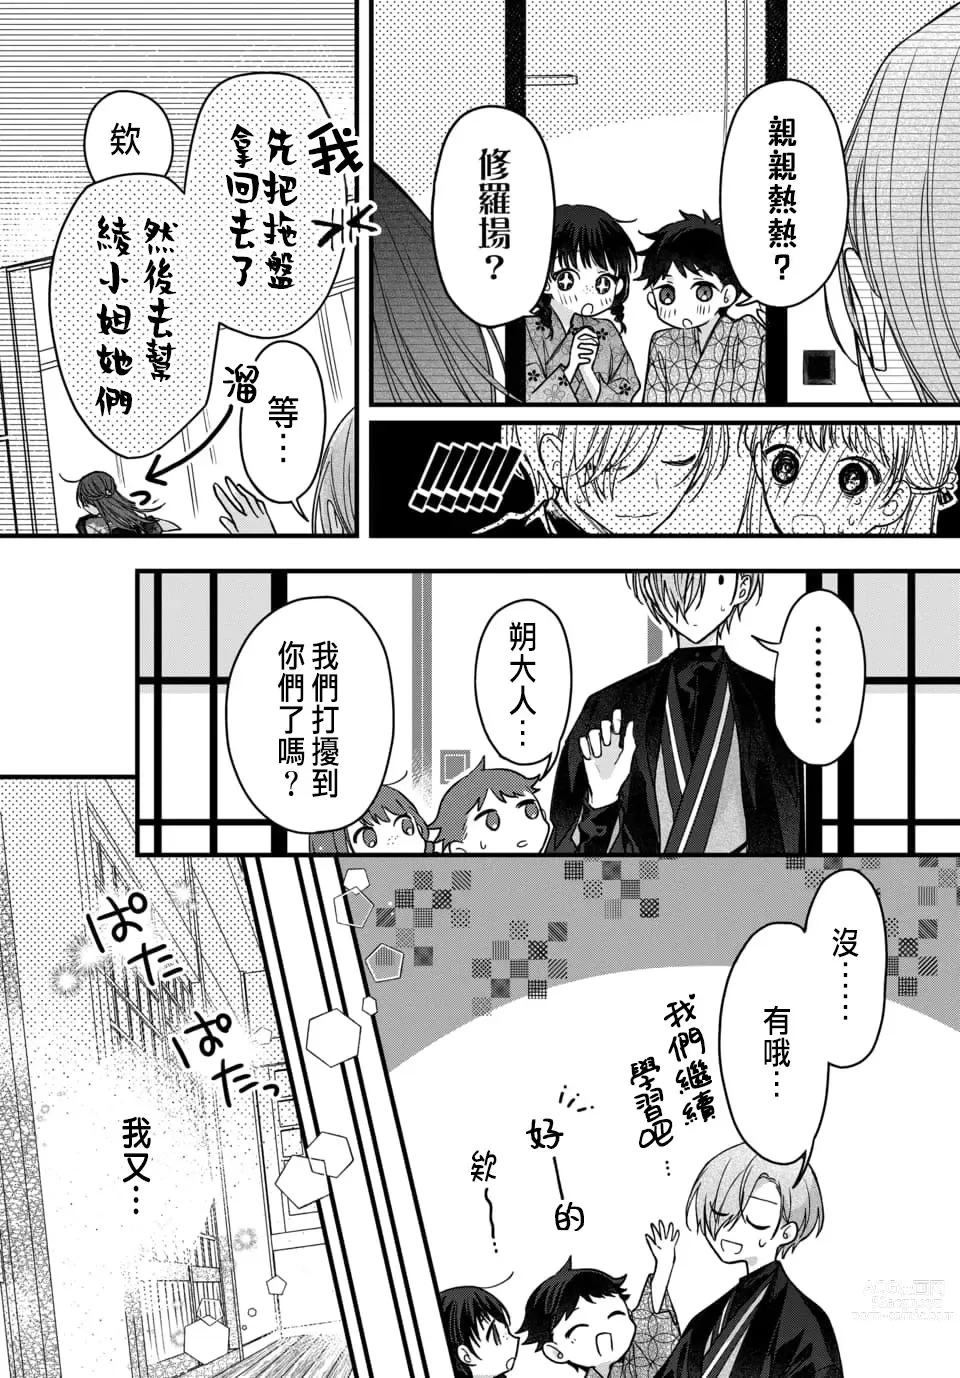 Page 219 of manga Tsuki e no Yomeiri 1-6